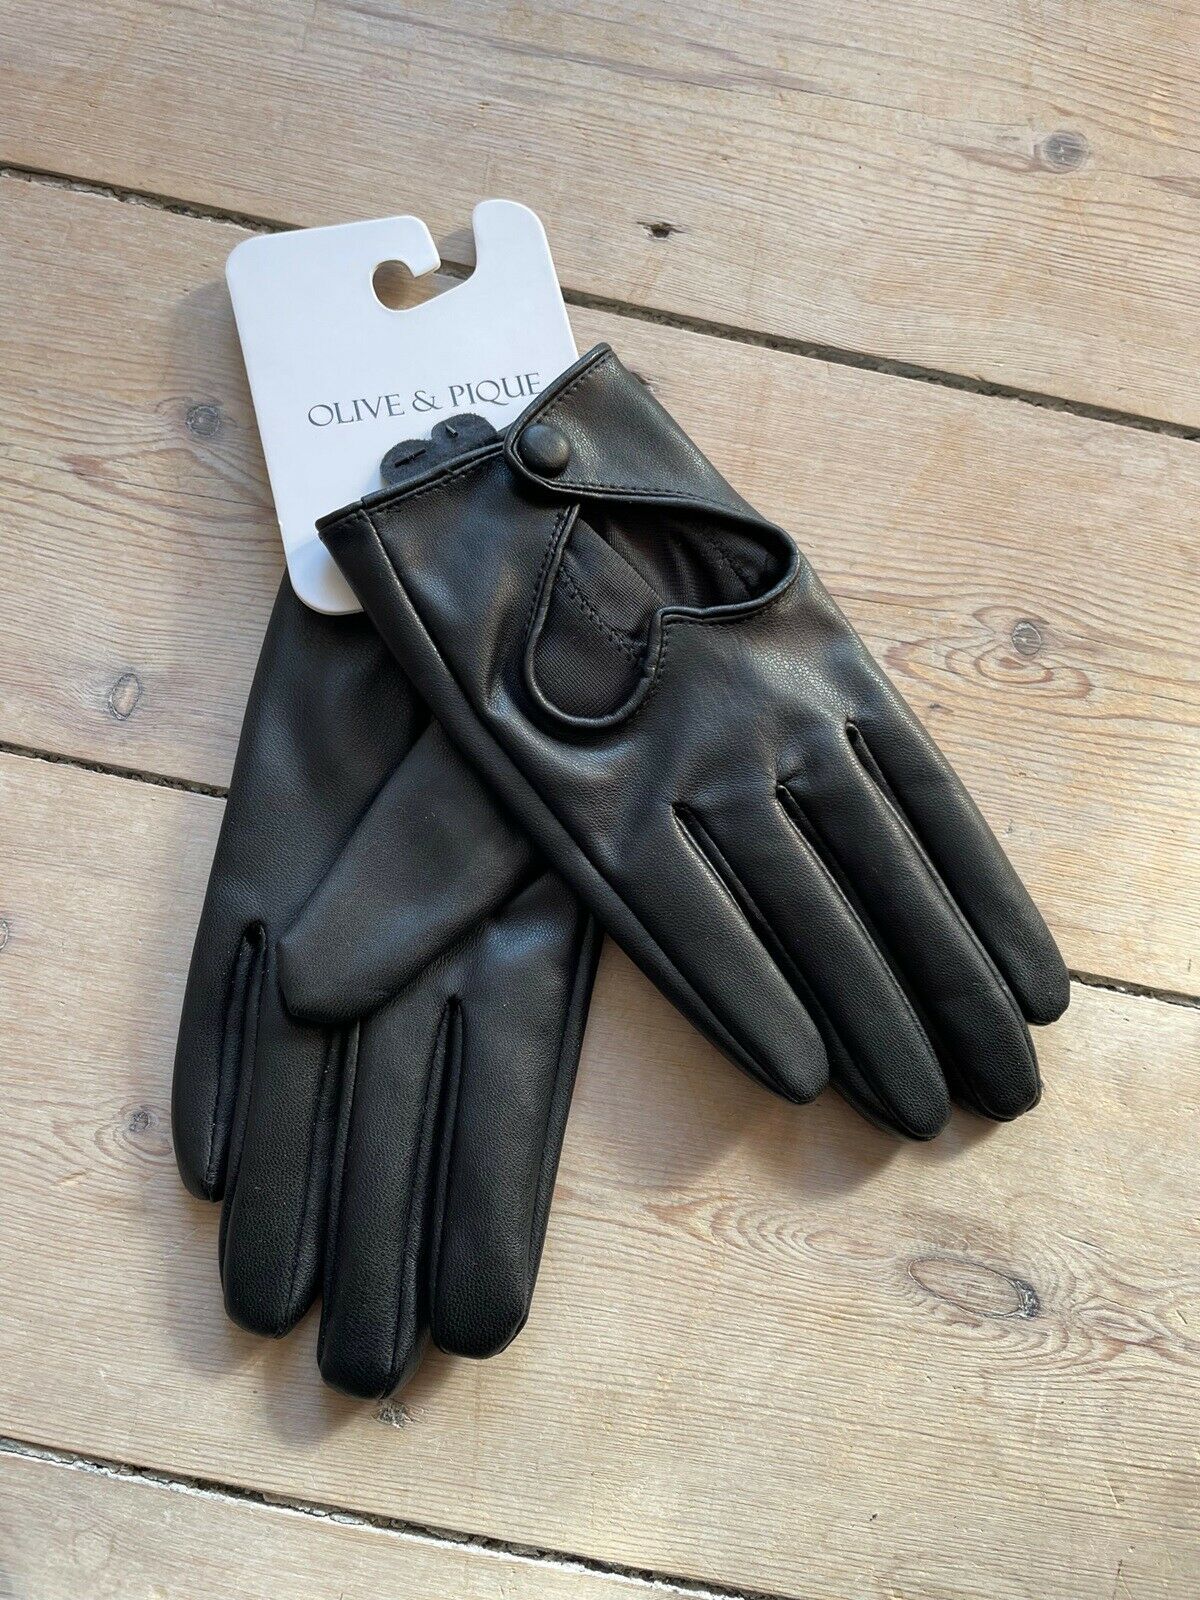 Handsker, Korte faux læder handsker med Olive & Pique – dba.dk – og Salg af Nyt Brugt